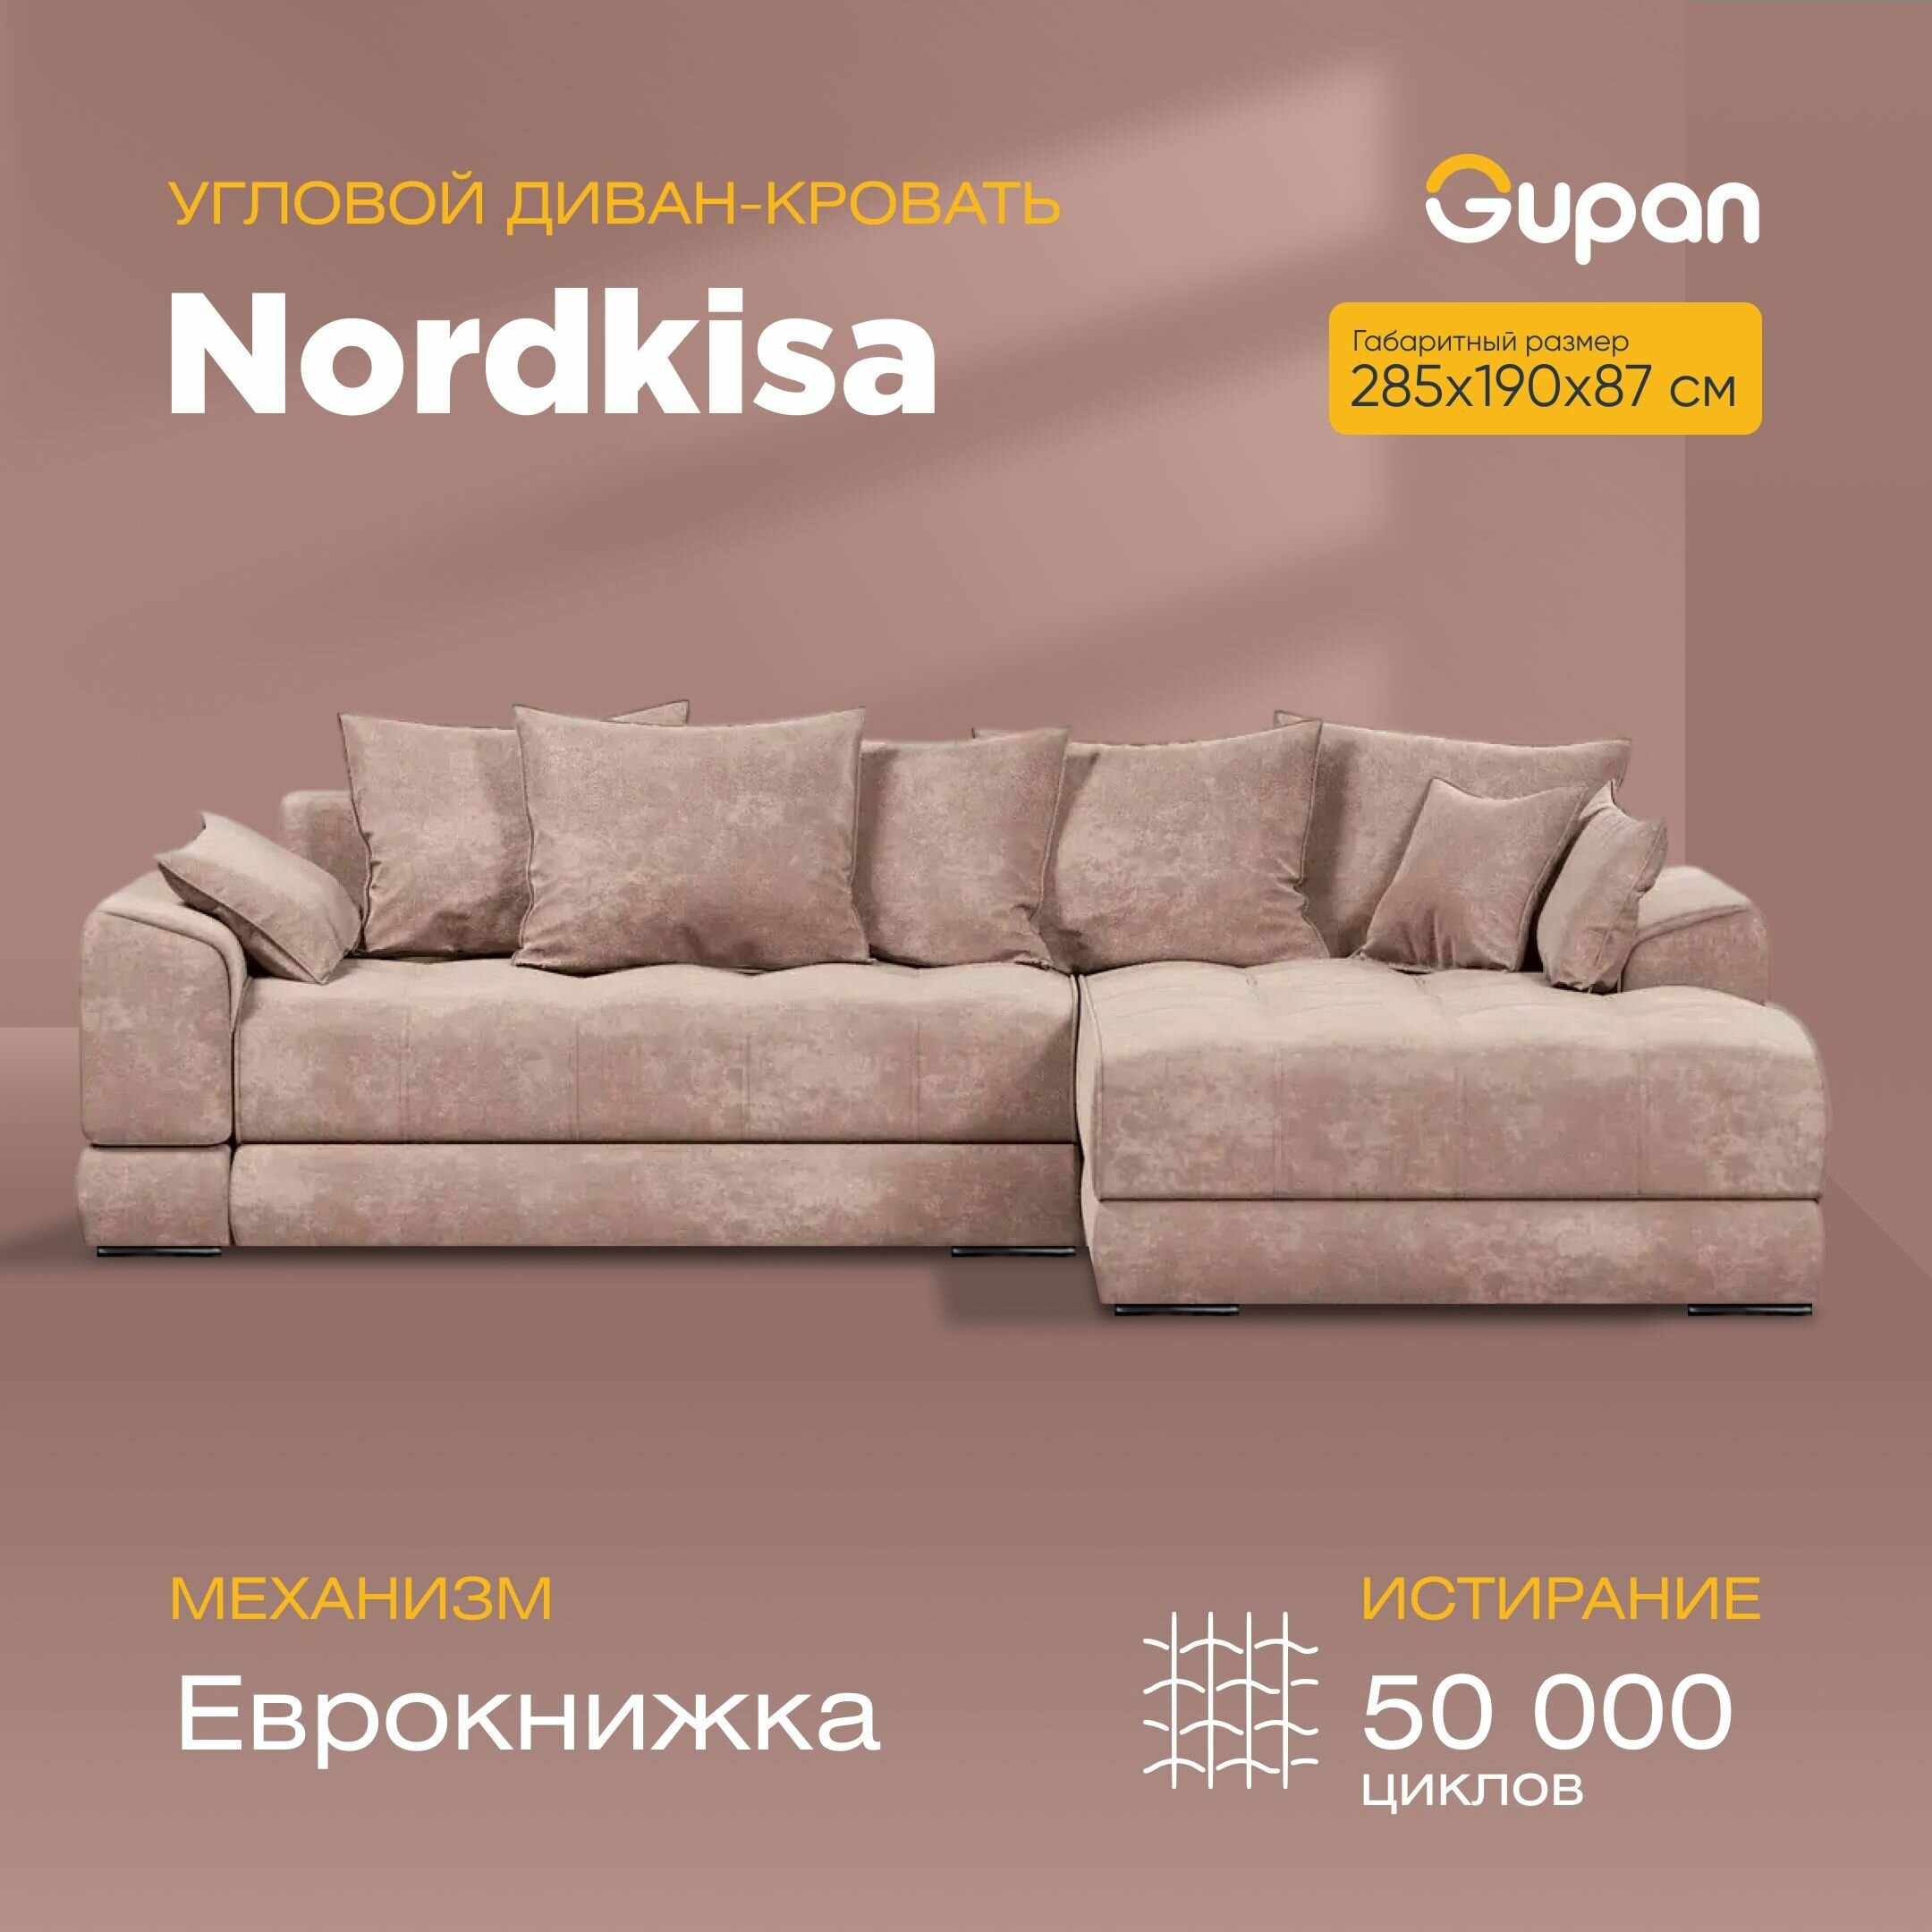 Угловой диван-кровать Gupan Nordkisa, механизм Еврокнижка, 285х190х87 см, наполнитель ППУ, ящик для белья, цвет Amigo Cocoa, угол справа